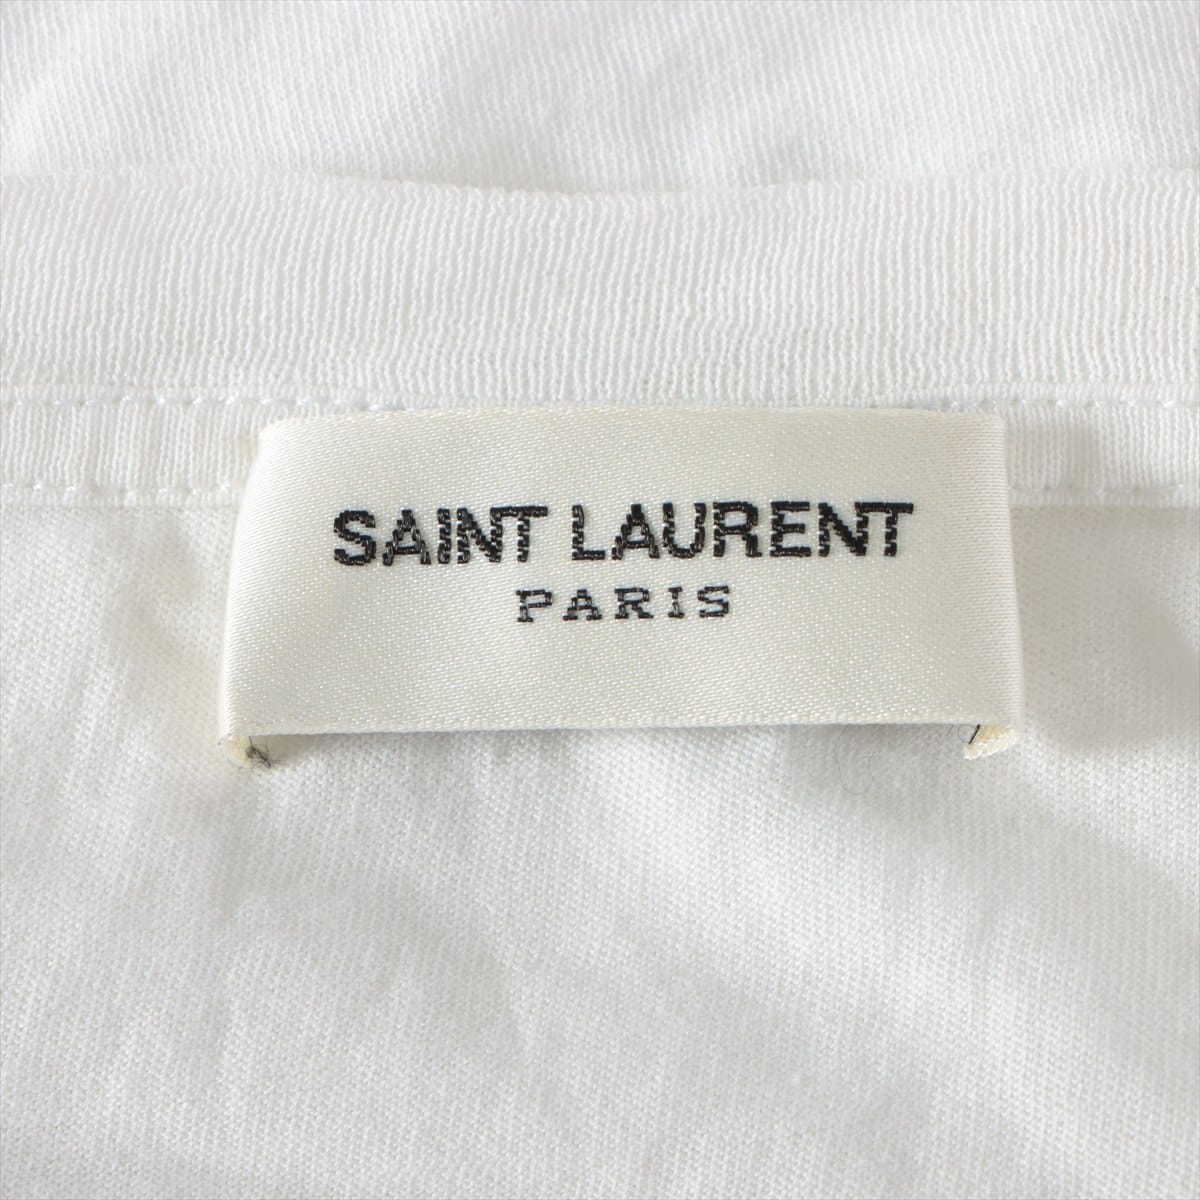 Saint Laurent Paris 14 years Cotton T-shirt L Men's White